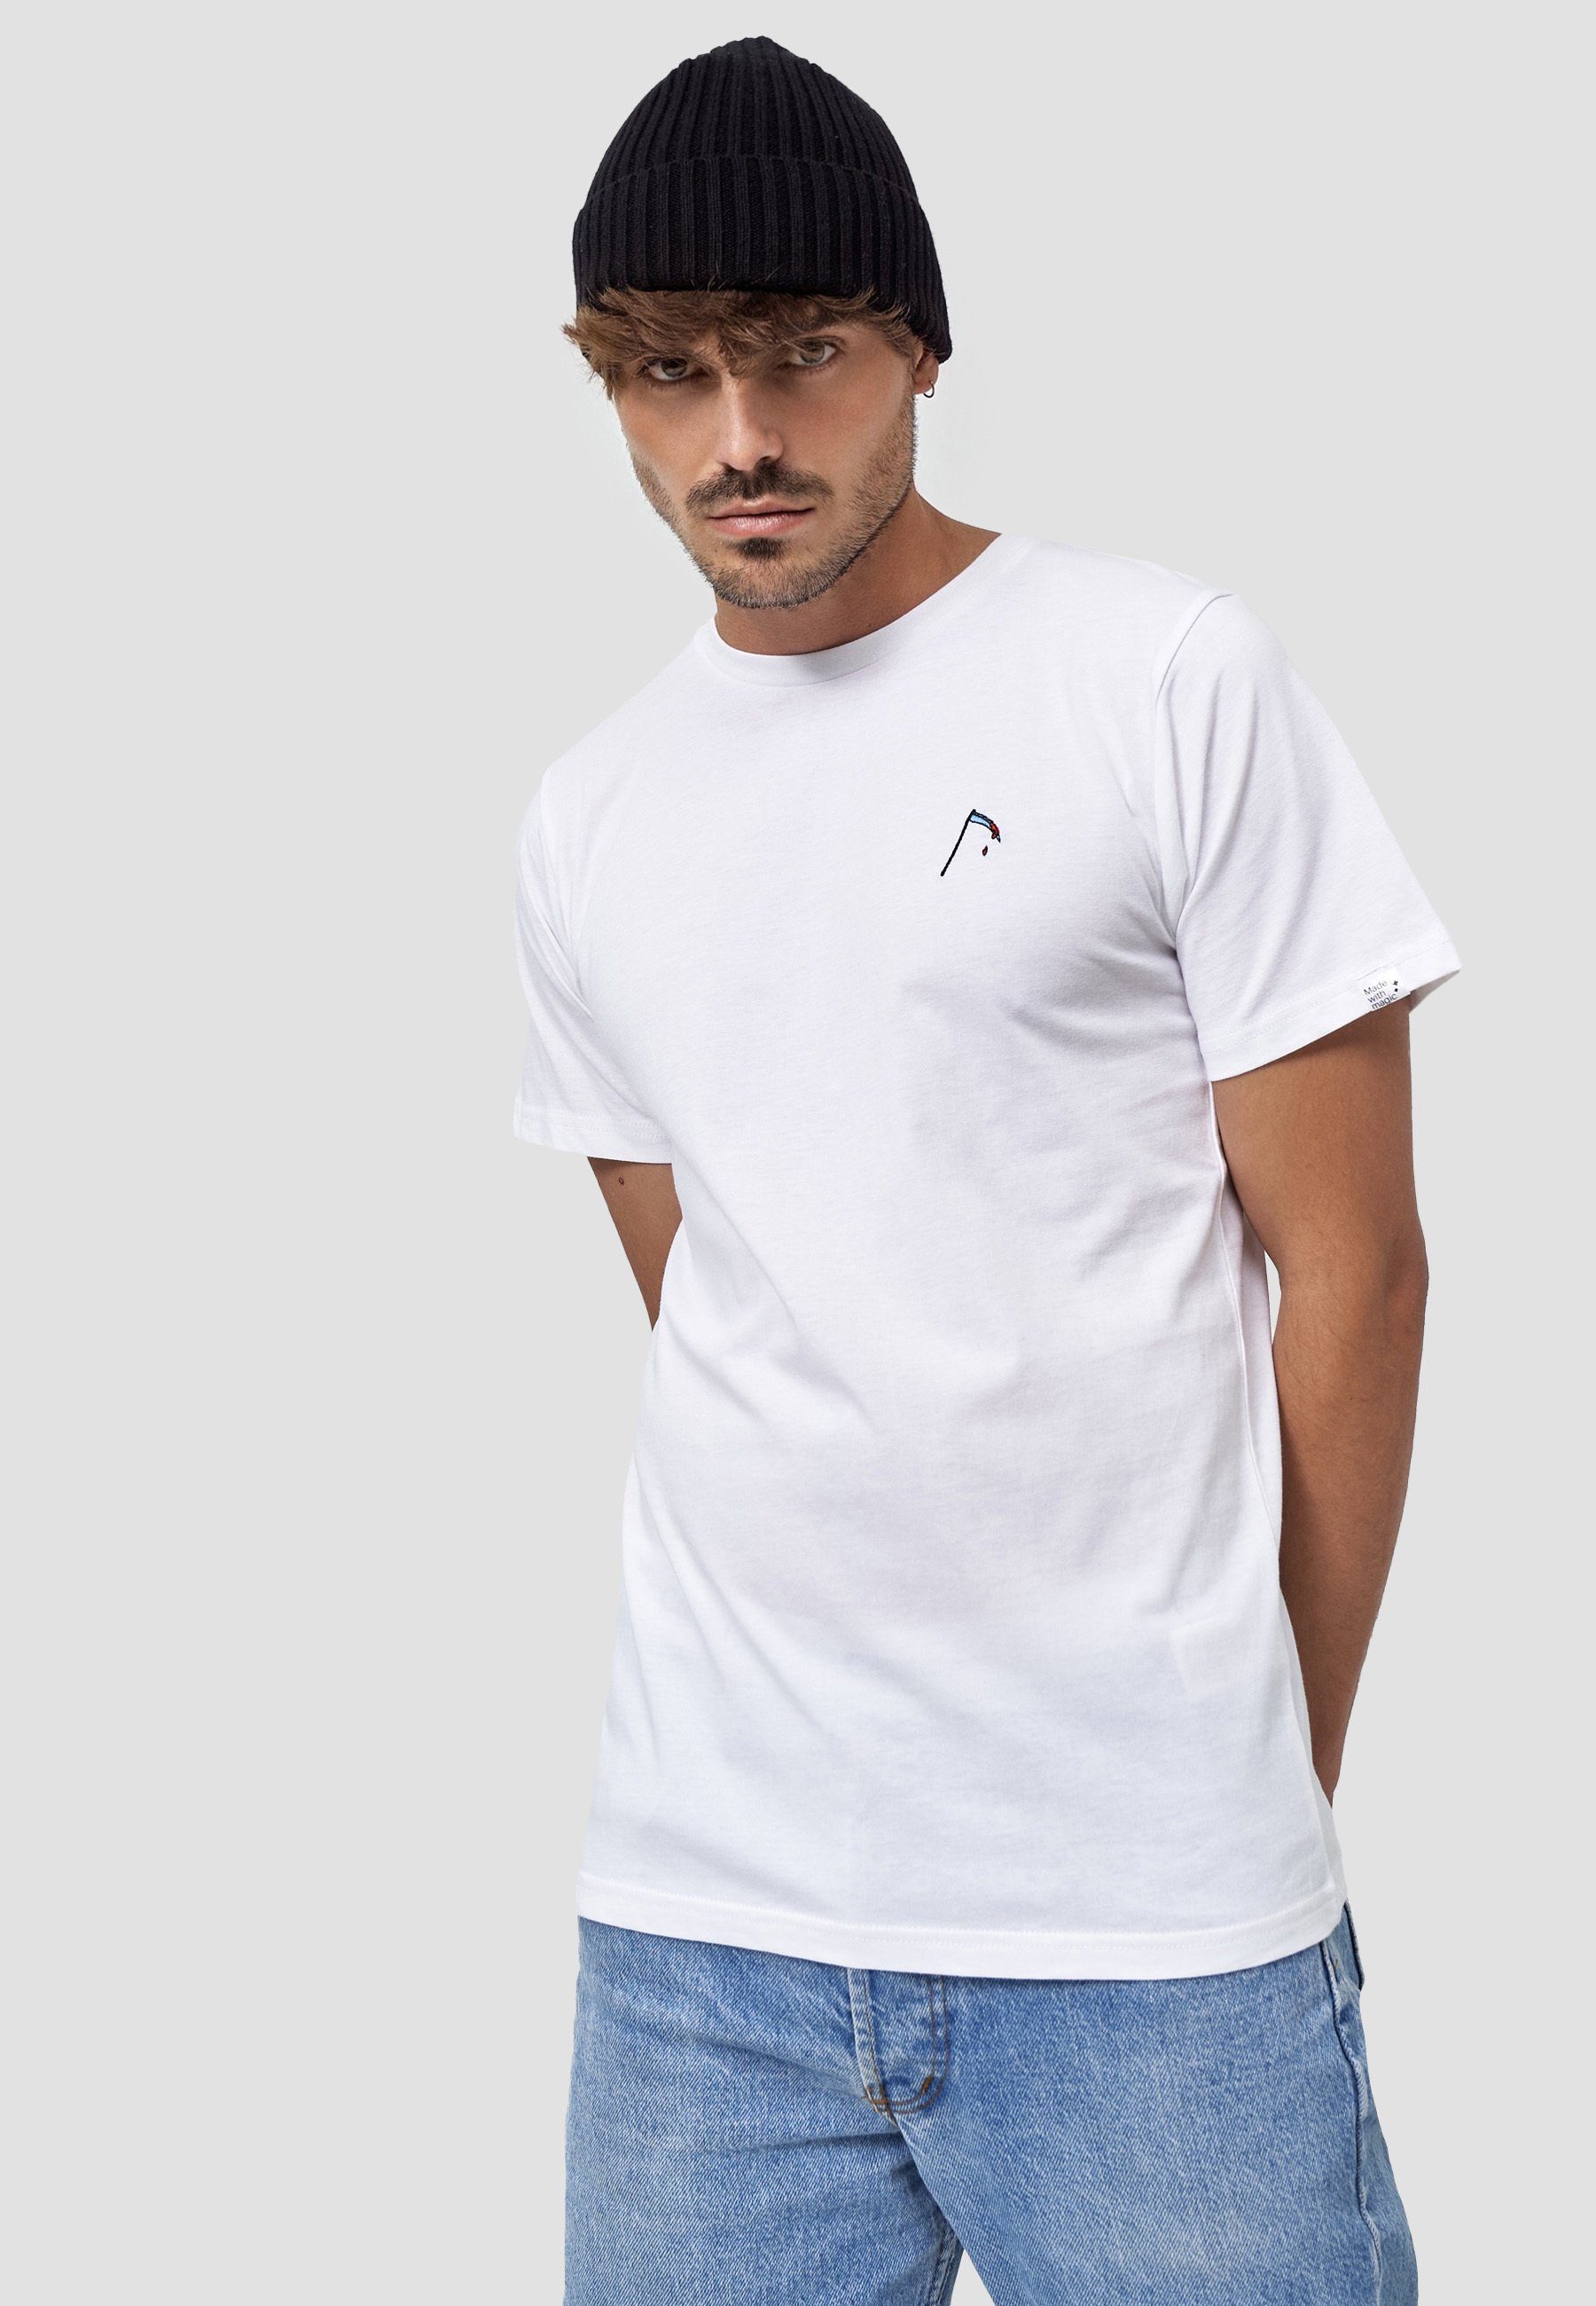 MIKON T-Shirt Sense GOTS zertifizierte Bio-Baumwolle Weiß